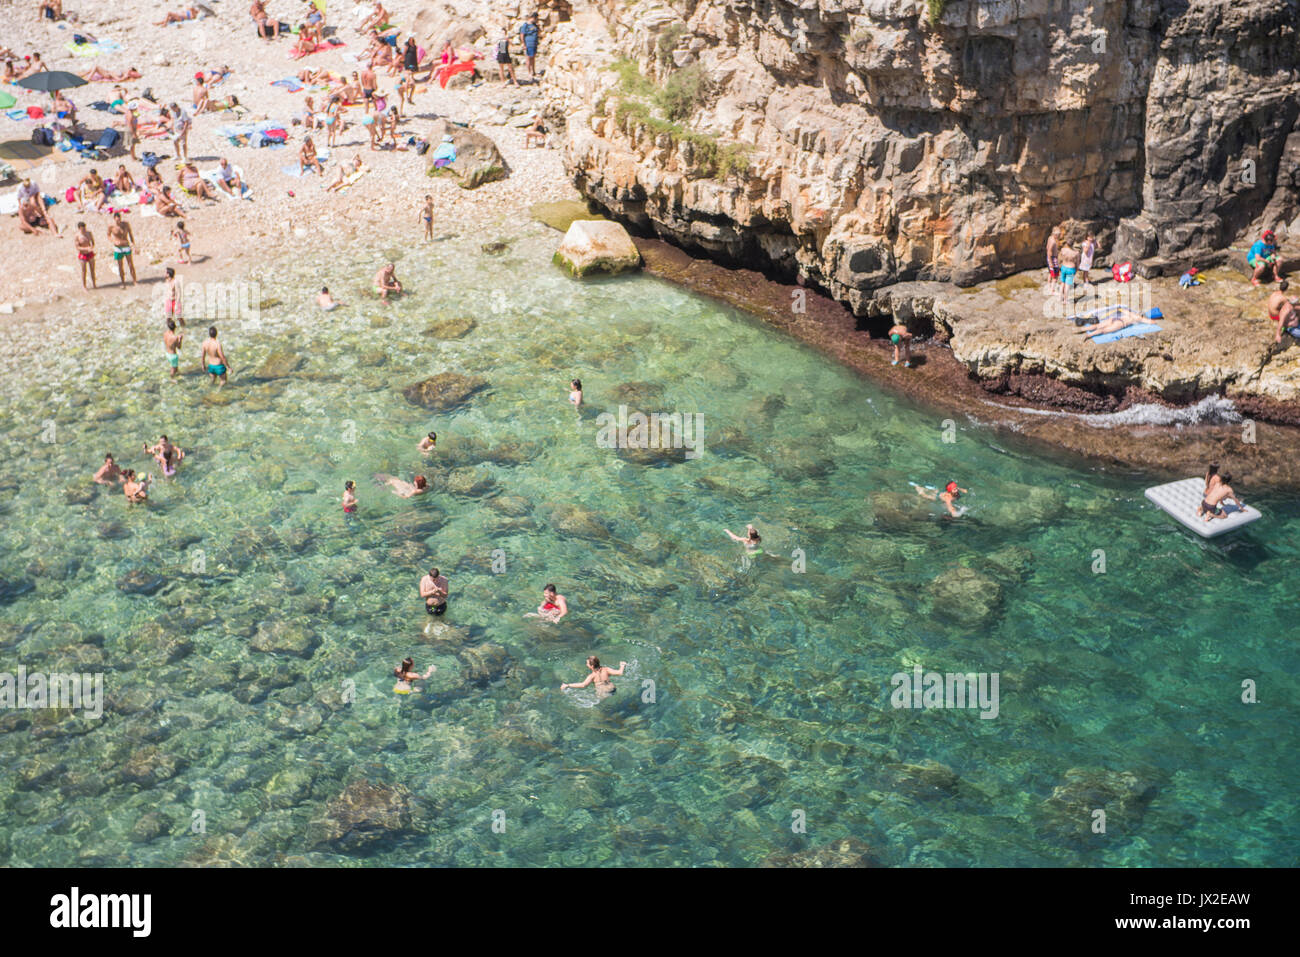 Los nadadores Wade en el espectacular océano turquesa en Polignano a Mare. La playa también es el sitio de la reunión anual de la Red Bull cliff-Competición de buceo. Foto de stock